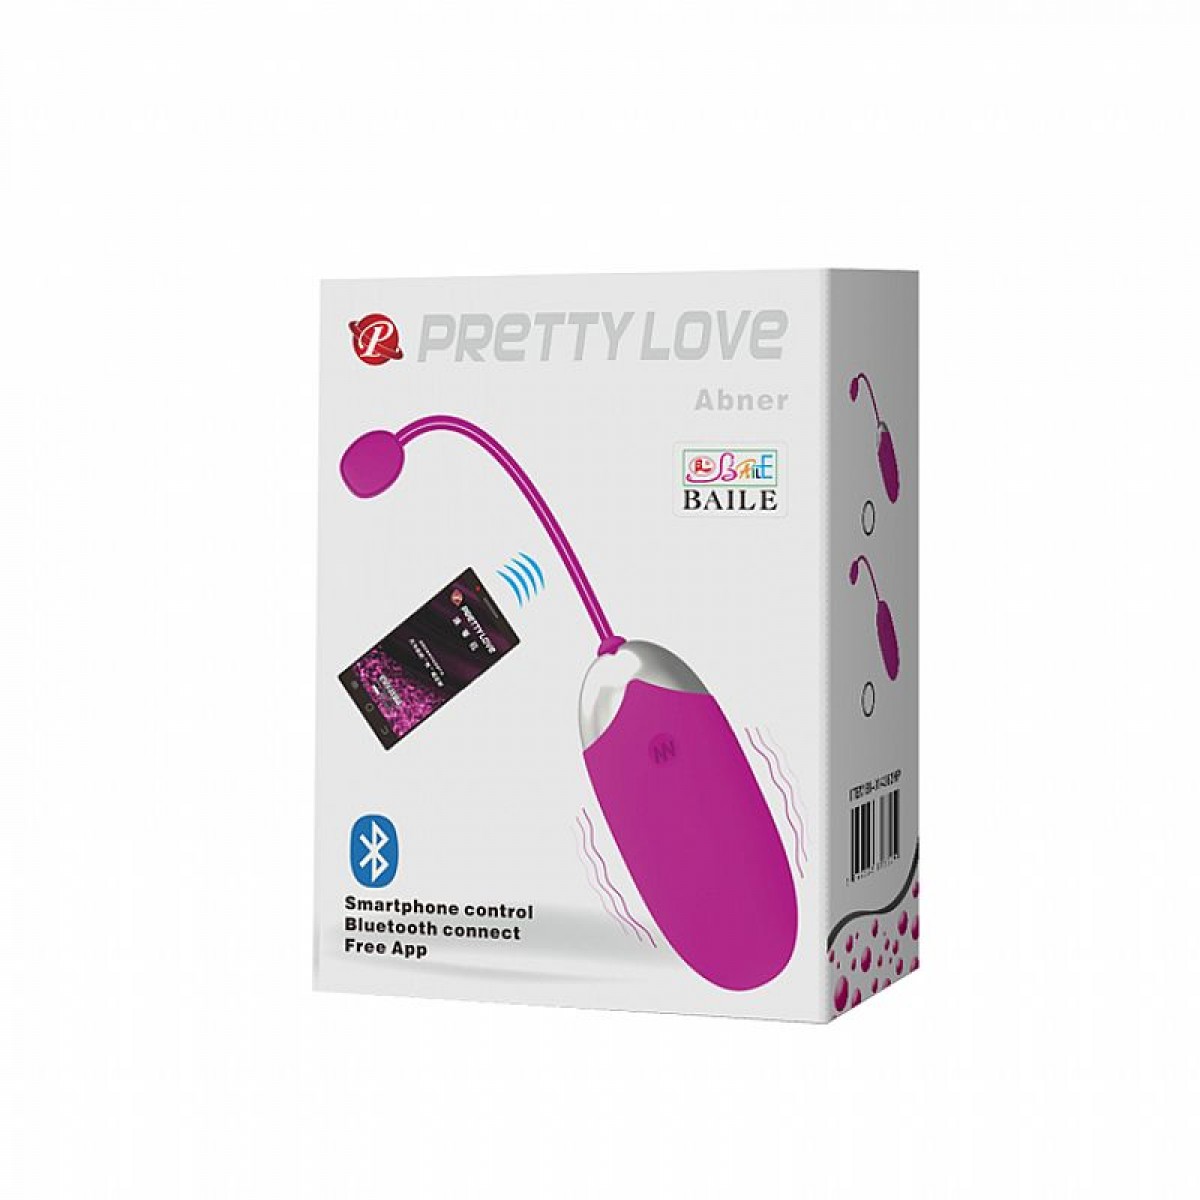 Bullet Wireless Super Potente de Toque Aveludado - Controlado por Aplicativo - Pretty Love - Chamas do Prazer Sex Shop